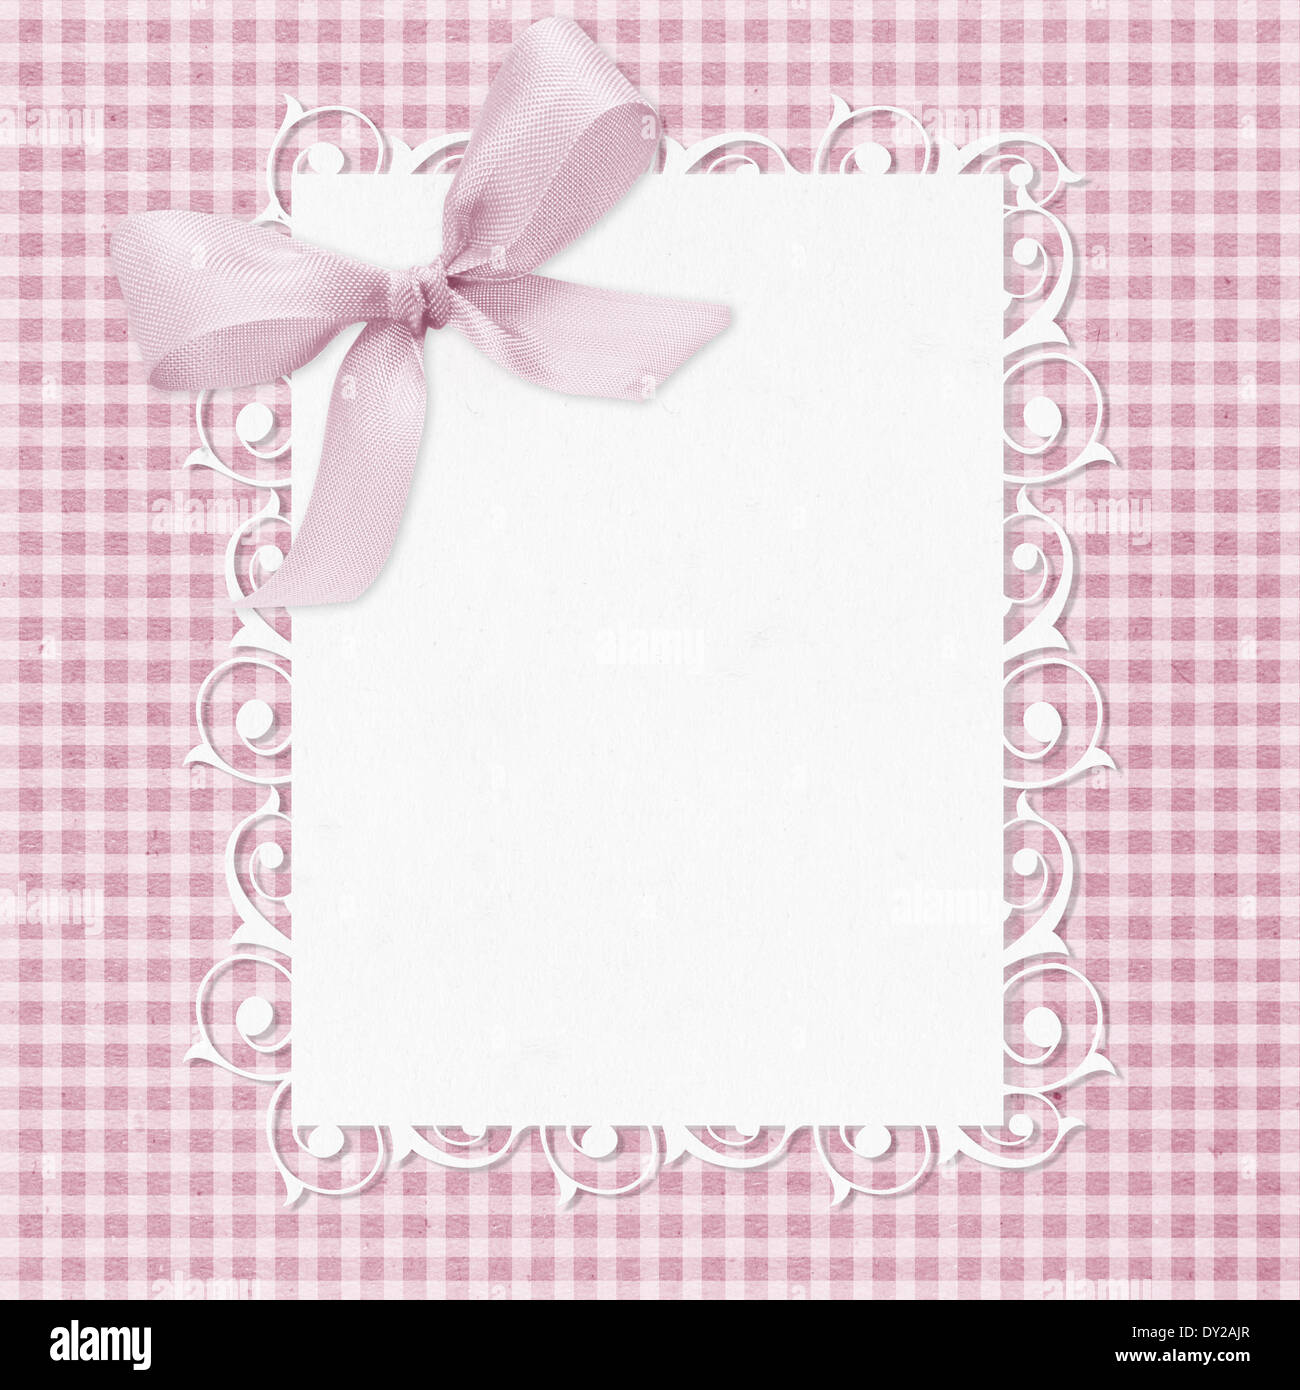 Baby Girl tarjeta de arribo con copia espacio para añadir texto. Foto de stock